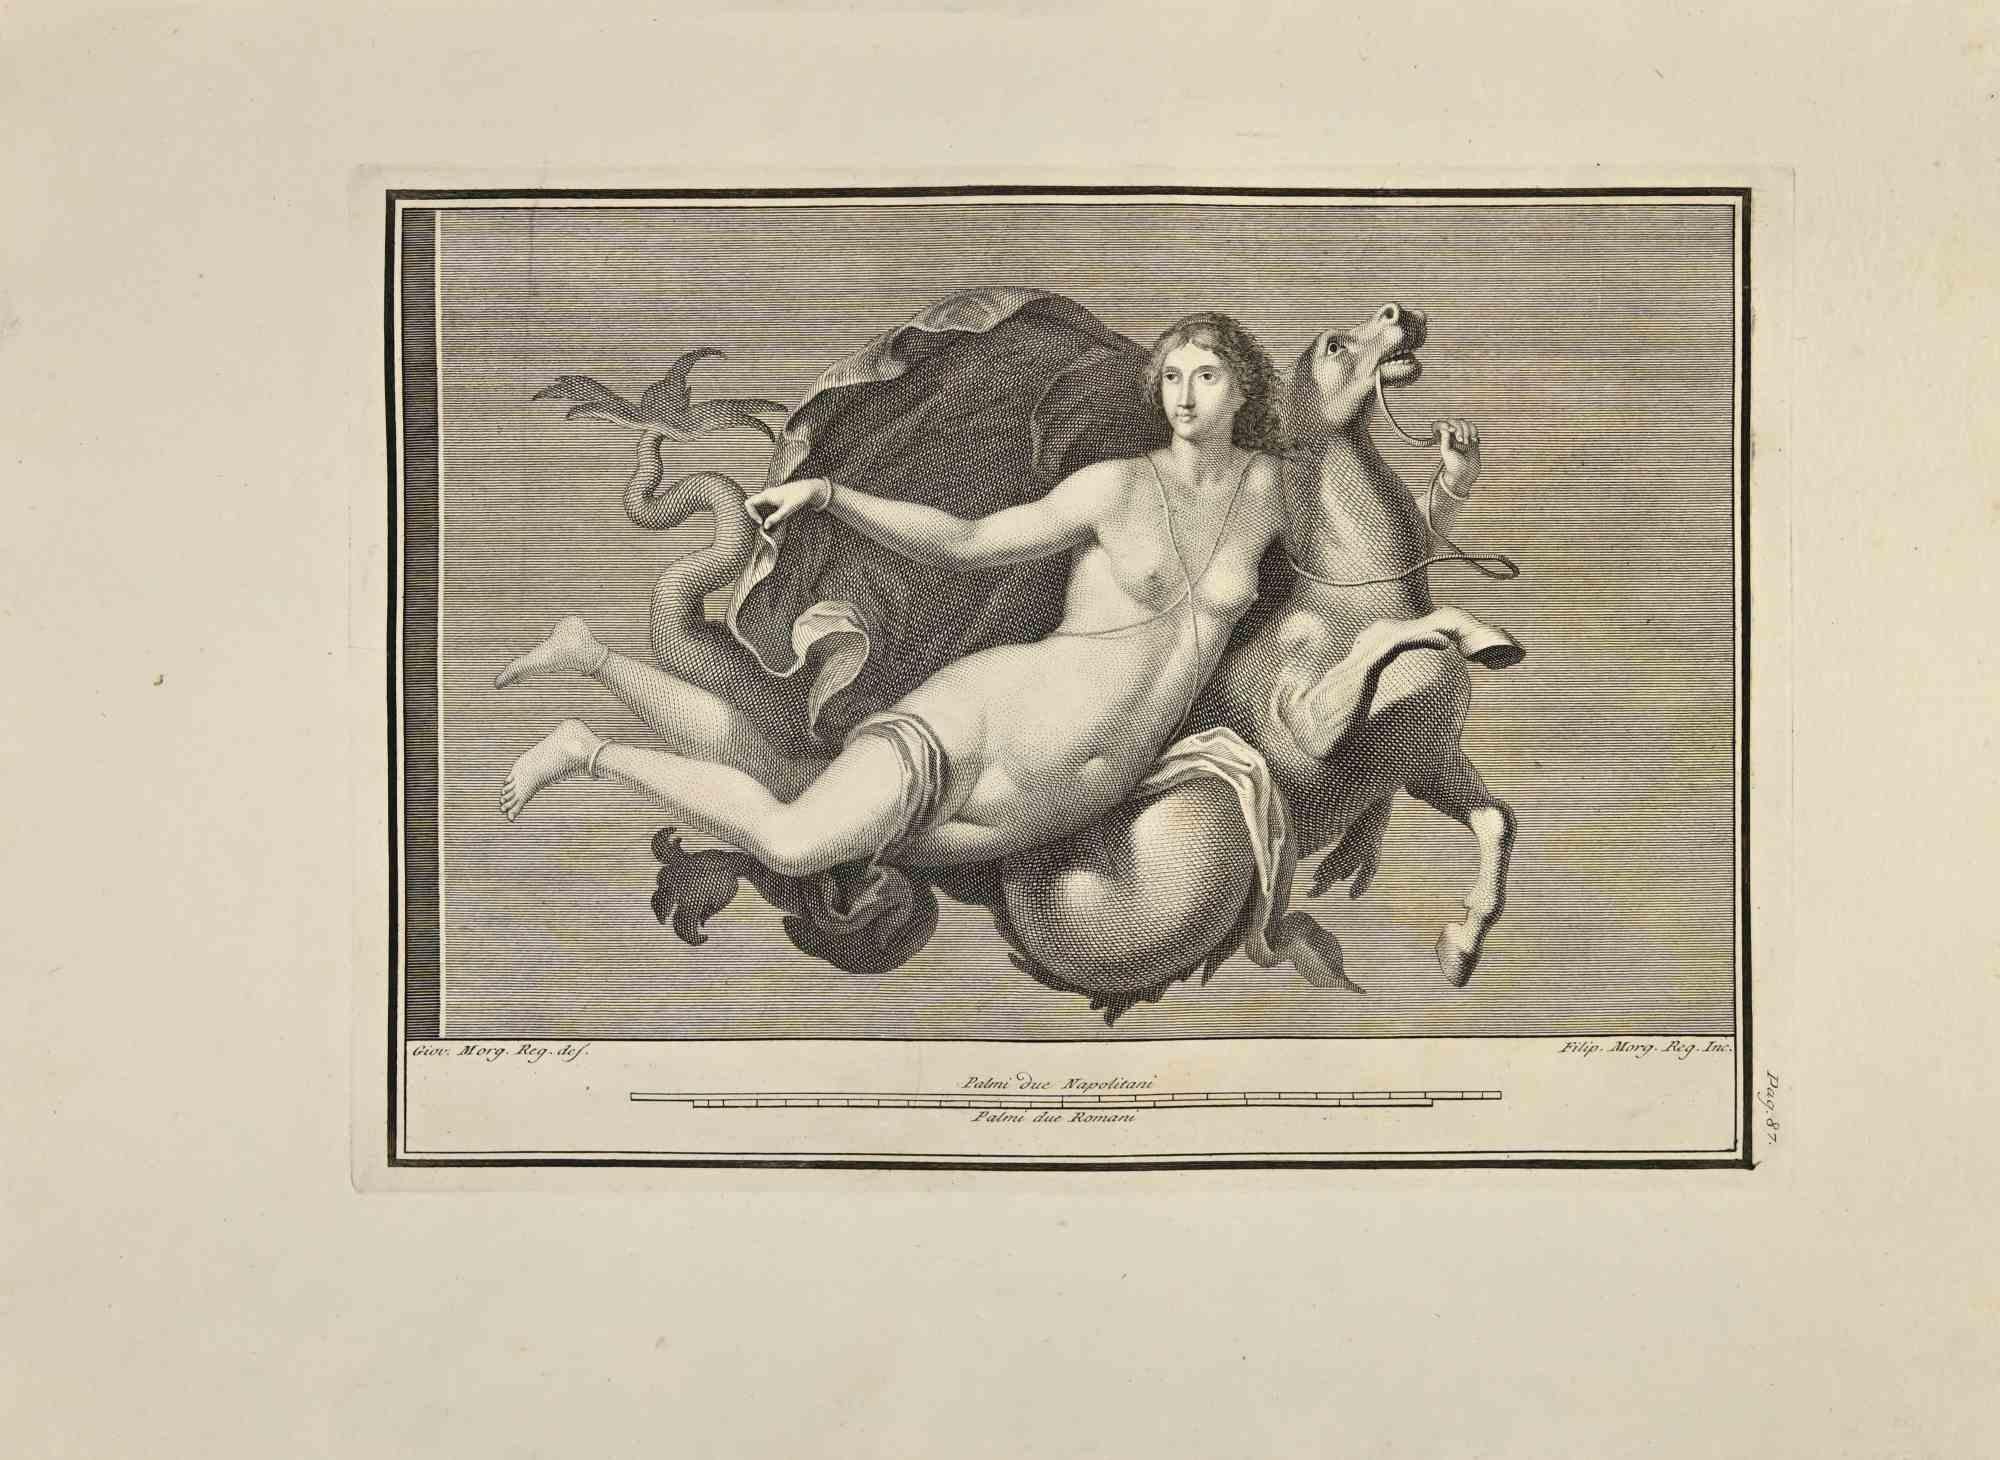 Venusgöttin mit Pferd aus den "Altertümern von Herculaneum" ist eine Radierung auf Papier von Filippo Morghen aus dem 18. Jahrhundert.

Signiert auf der Platte.

Guter Zustand mit einigen Faltungen.

Die Radierung gehört zu der Druckserie